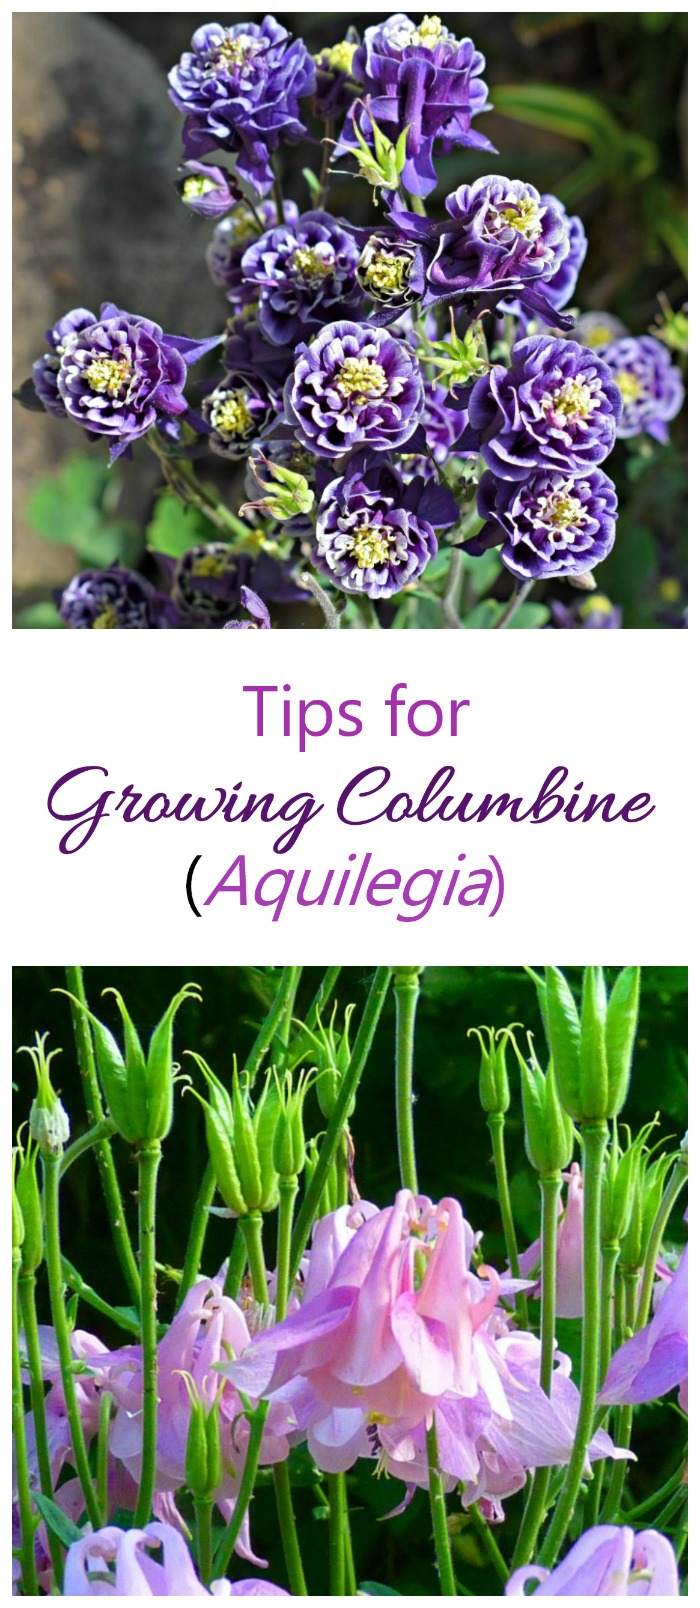 Trồng Columbine – Cách trồng Aquilegia cho hoa hình chuông độc đáo